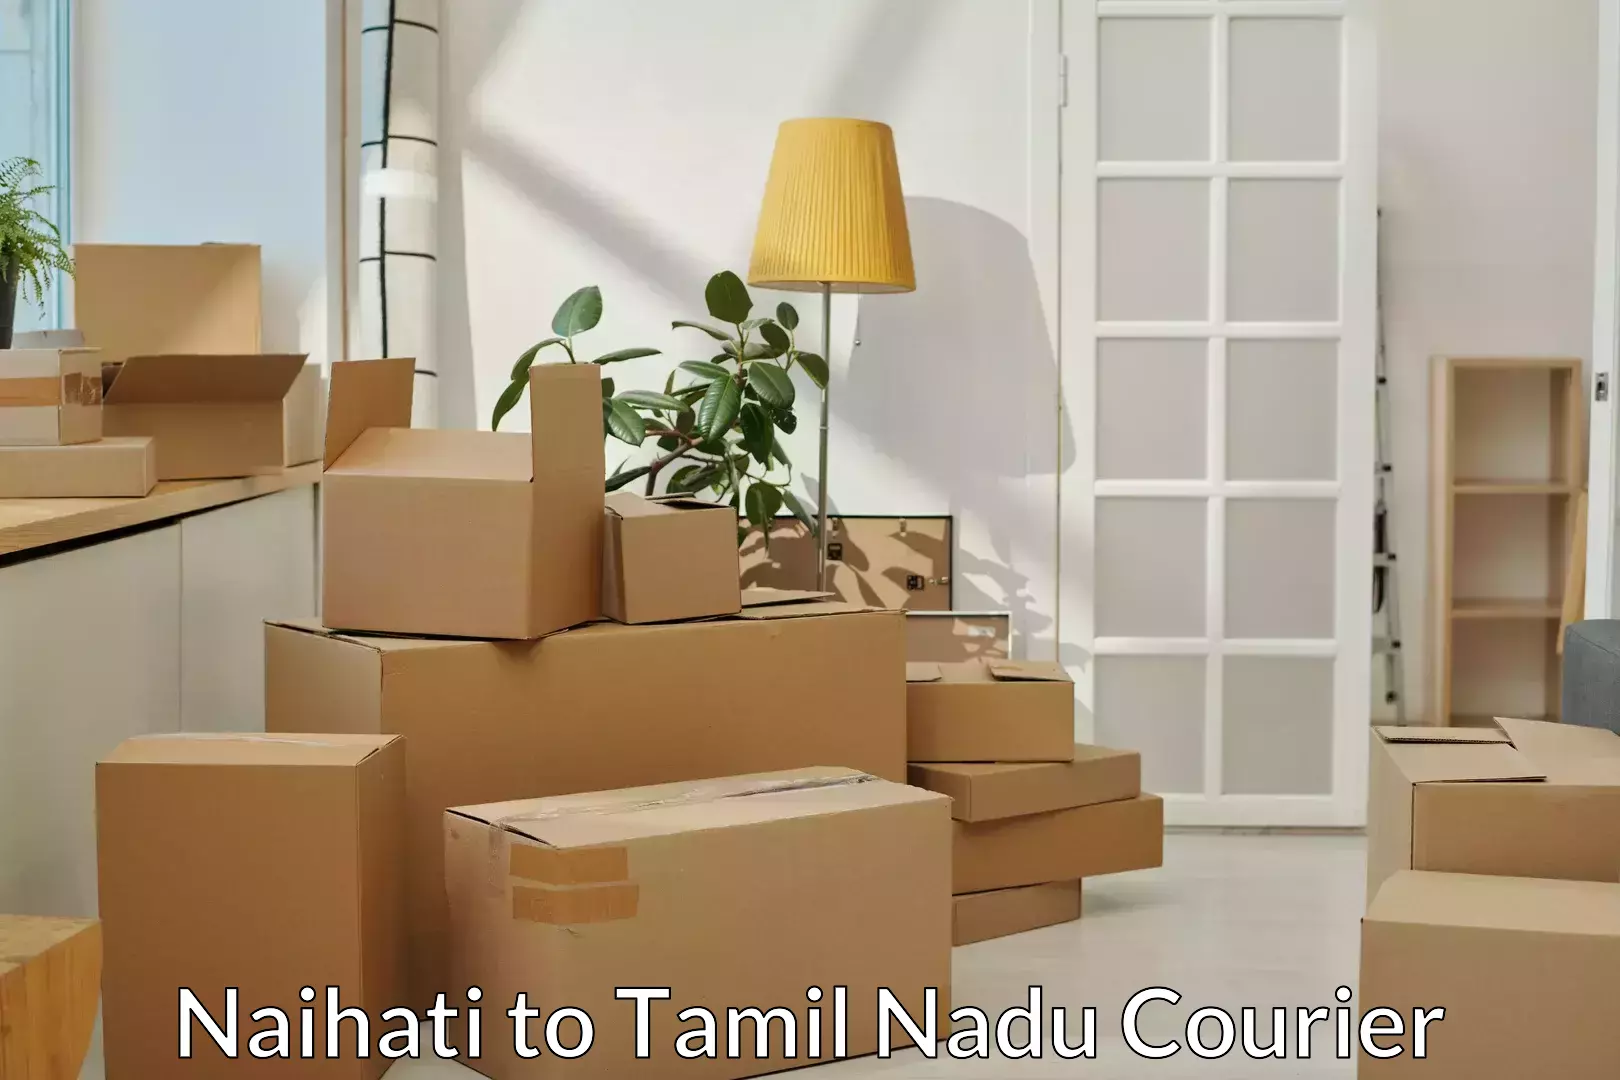 Efficient furniture shifting Naihati to Rathinasabapathy Puram